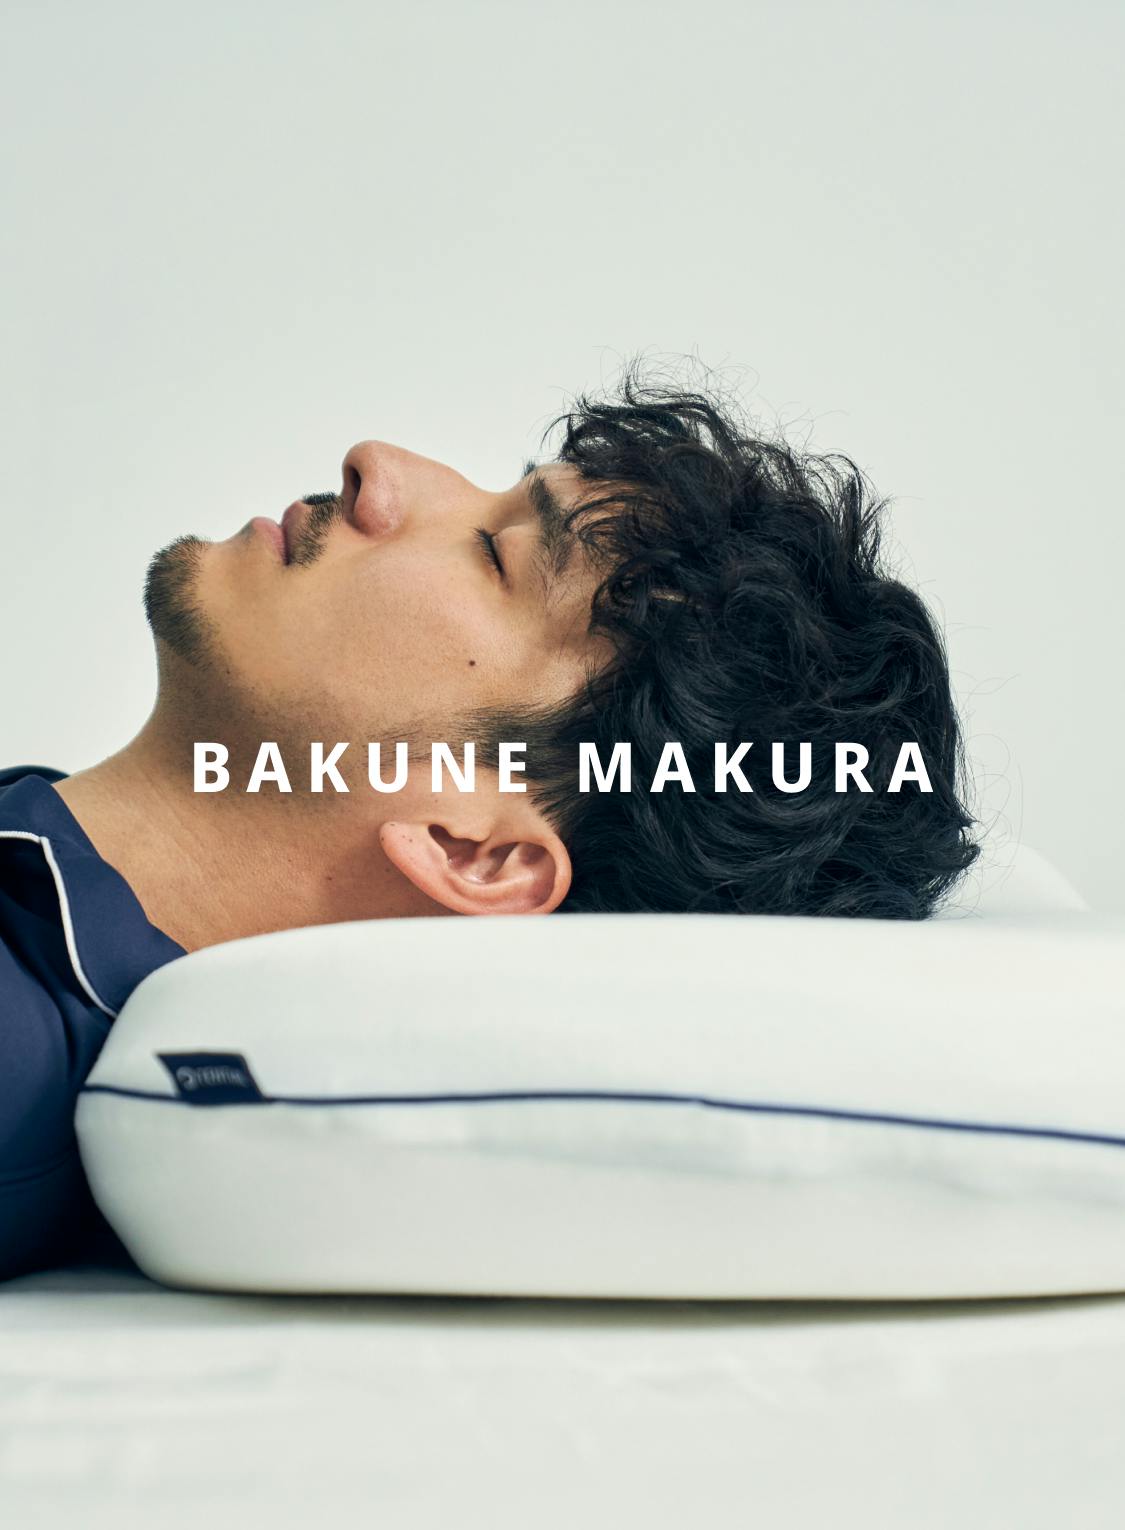 BAKUNE MAKURA | TENTIAL[テンシャル] 公式オンラインストア